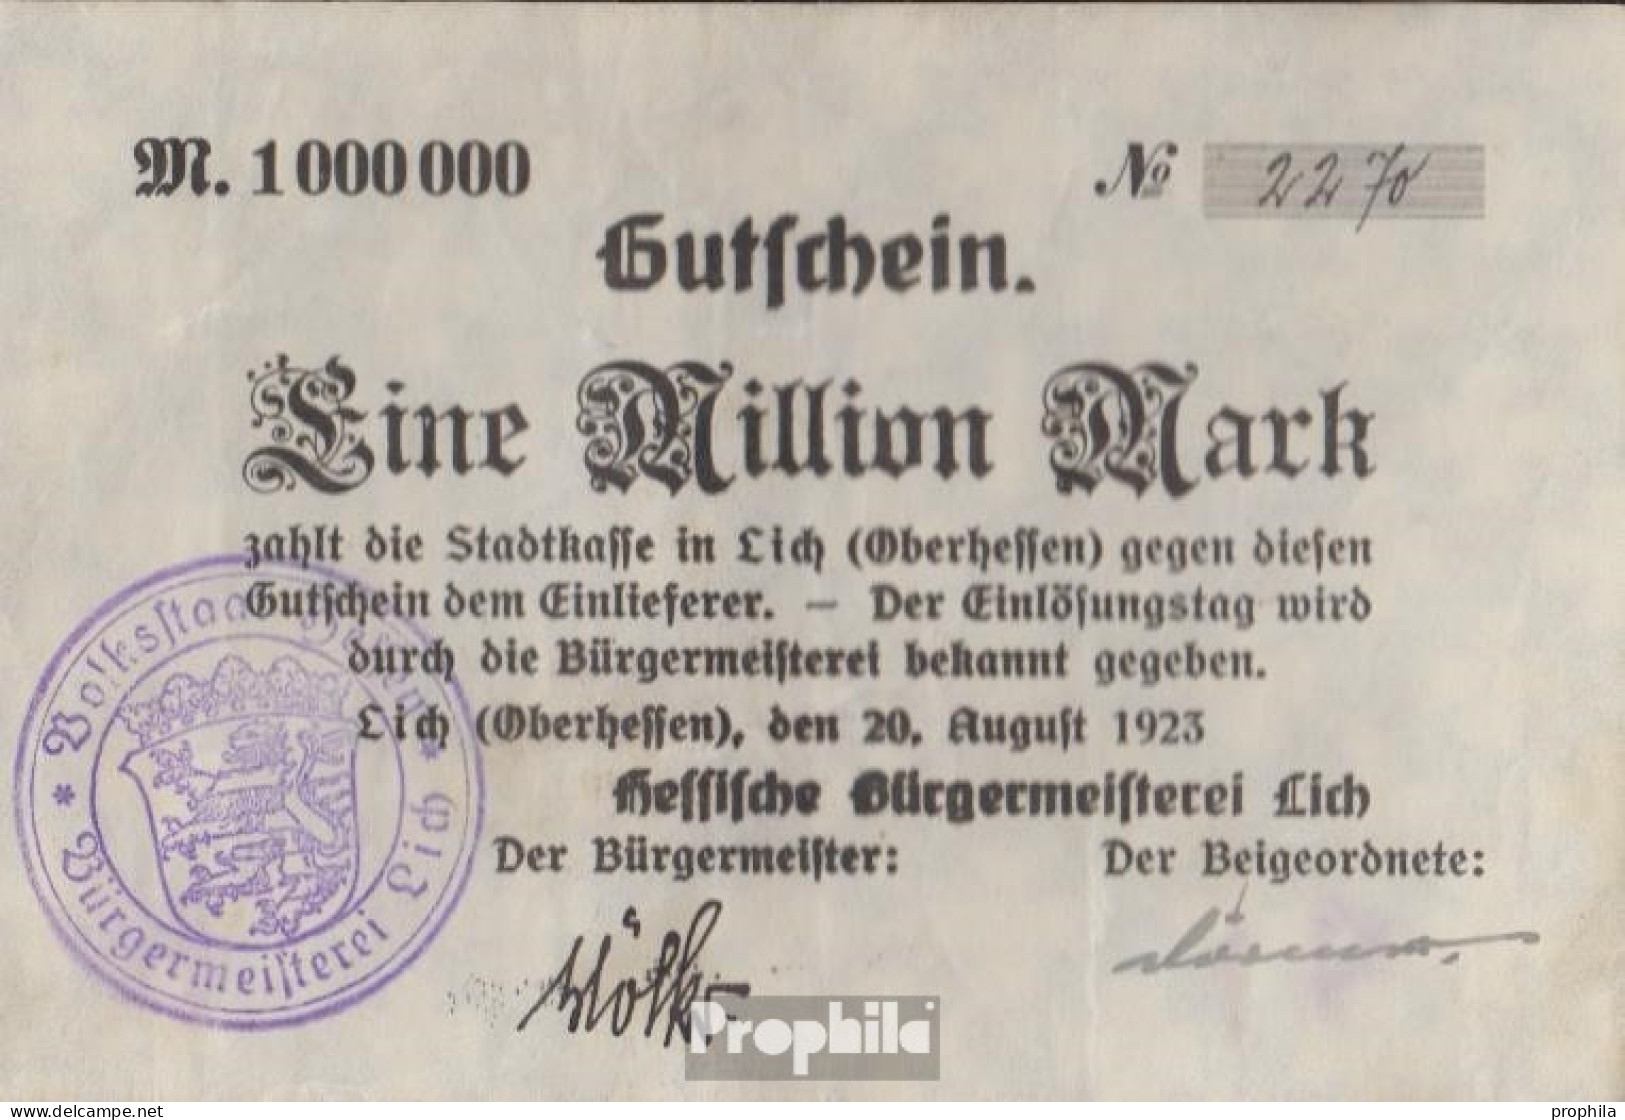 Lich Inflationsgeld Stadt Lich Gebraucht (III) 1923 1 Million Mark - 1 Million Mark